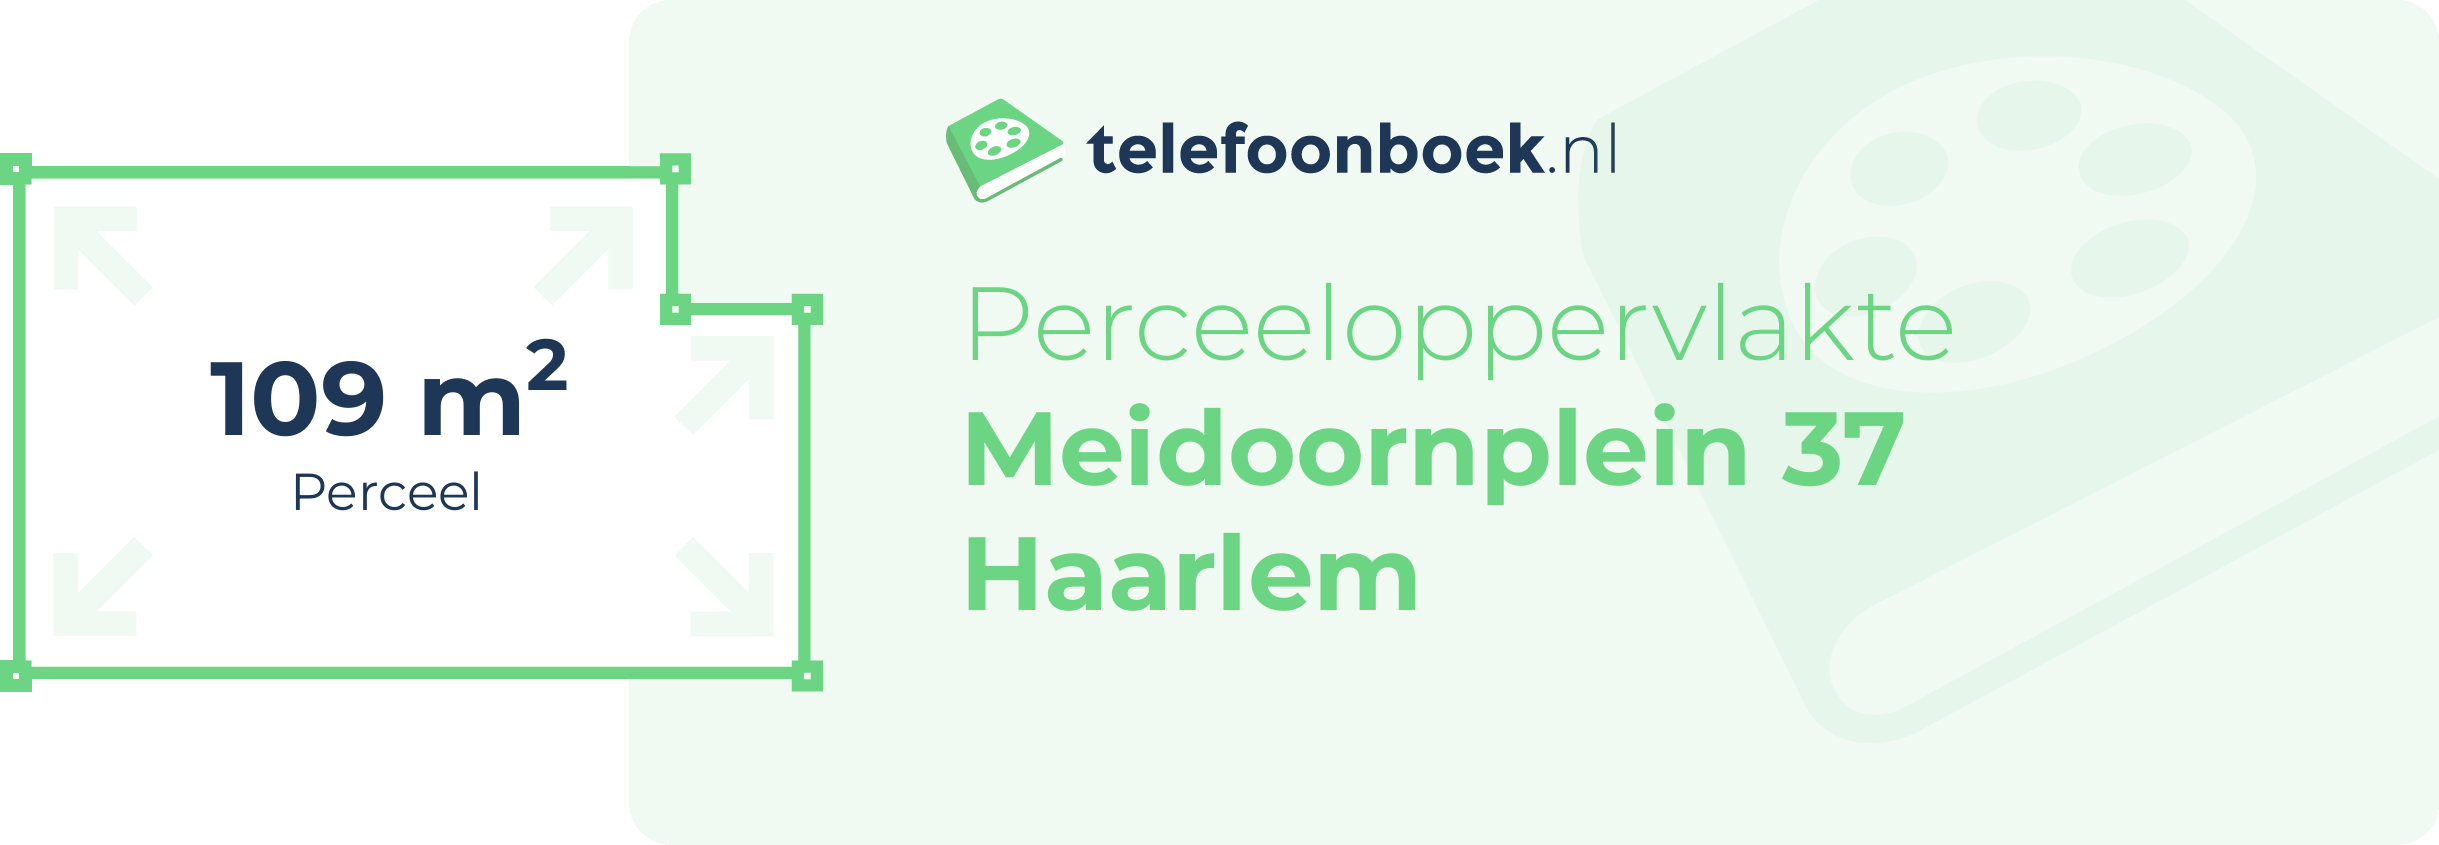 Perceeloppervlakte Meidoornplein 37 Haarlem